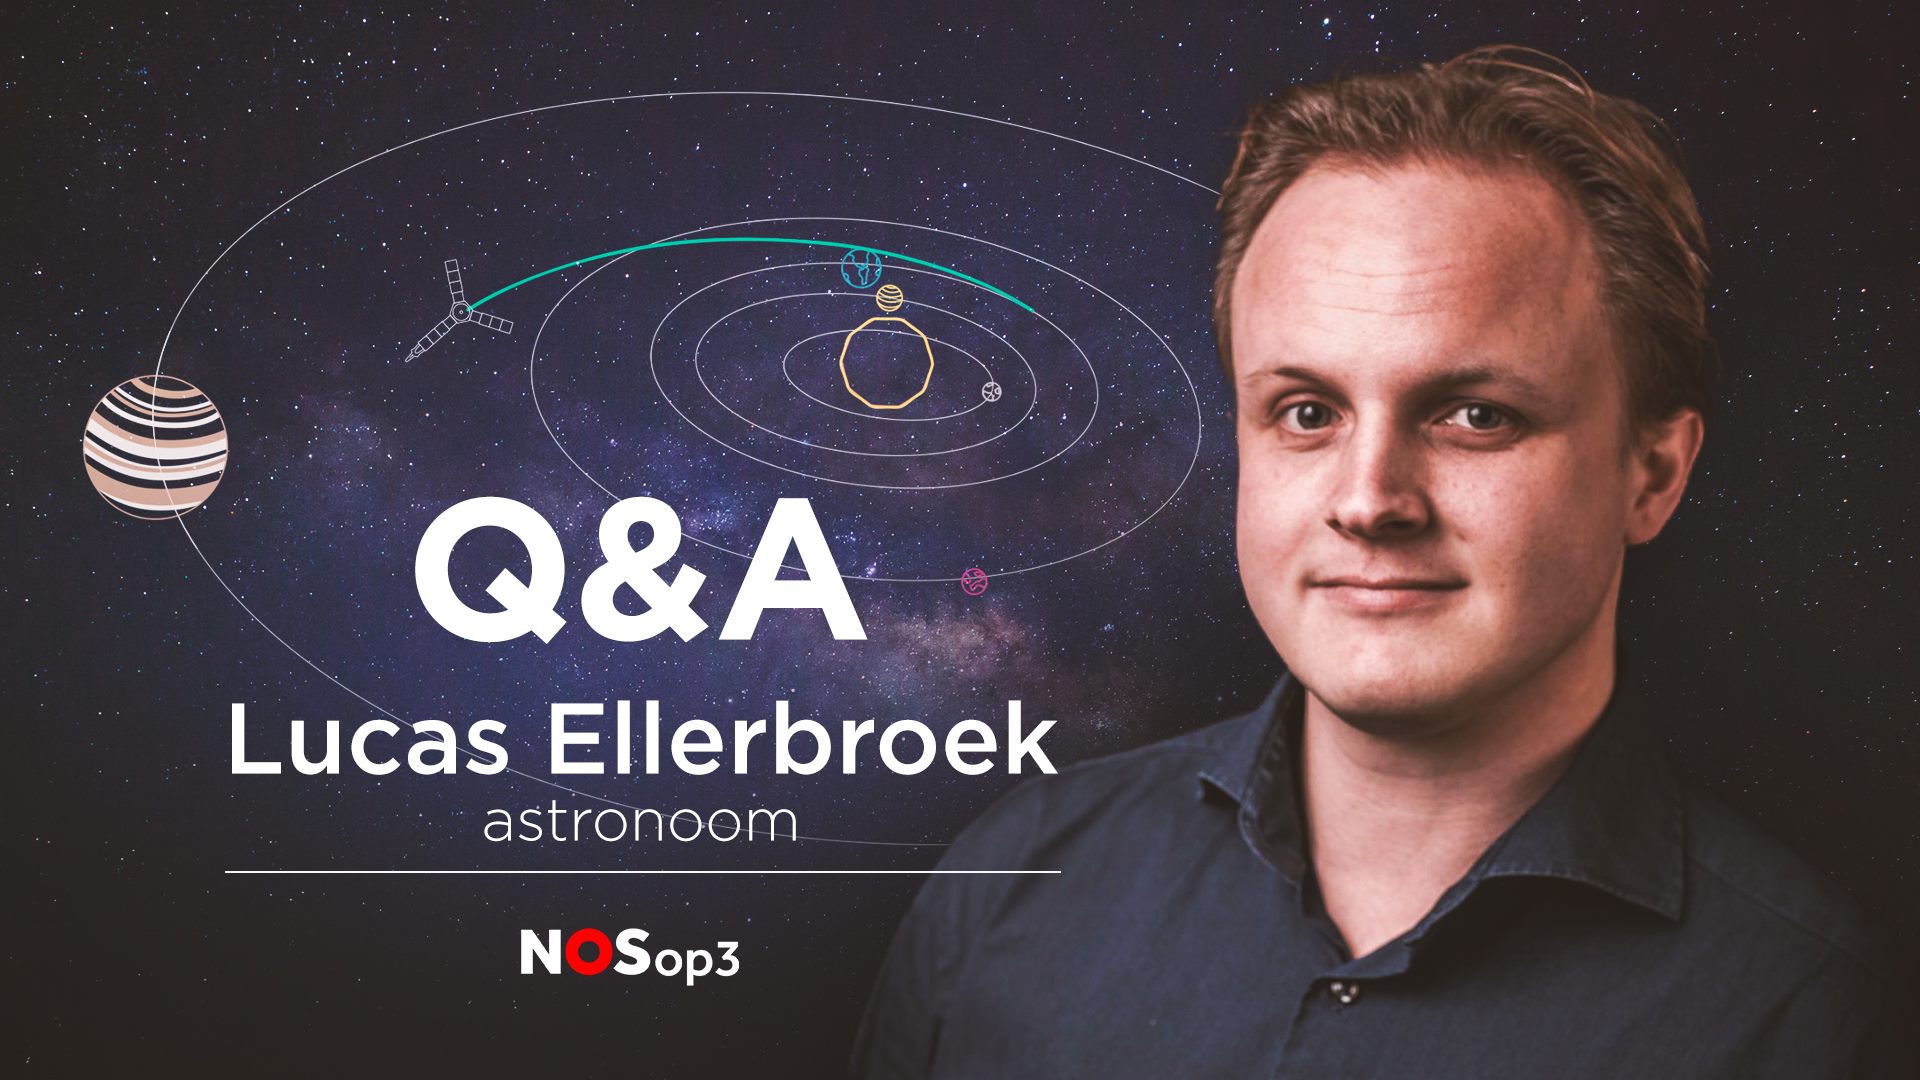 Q&A Lucas Ellerbroek | NOS op 3